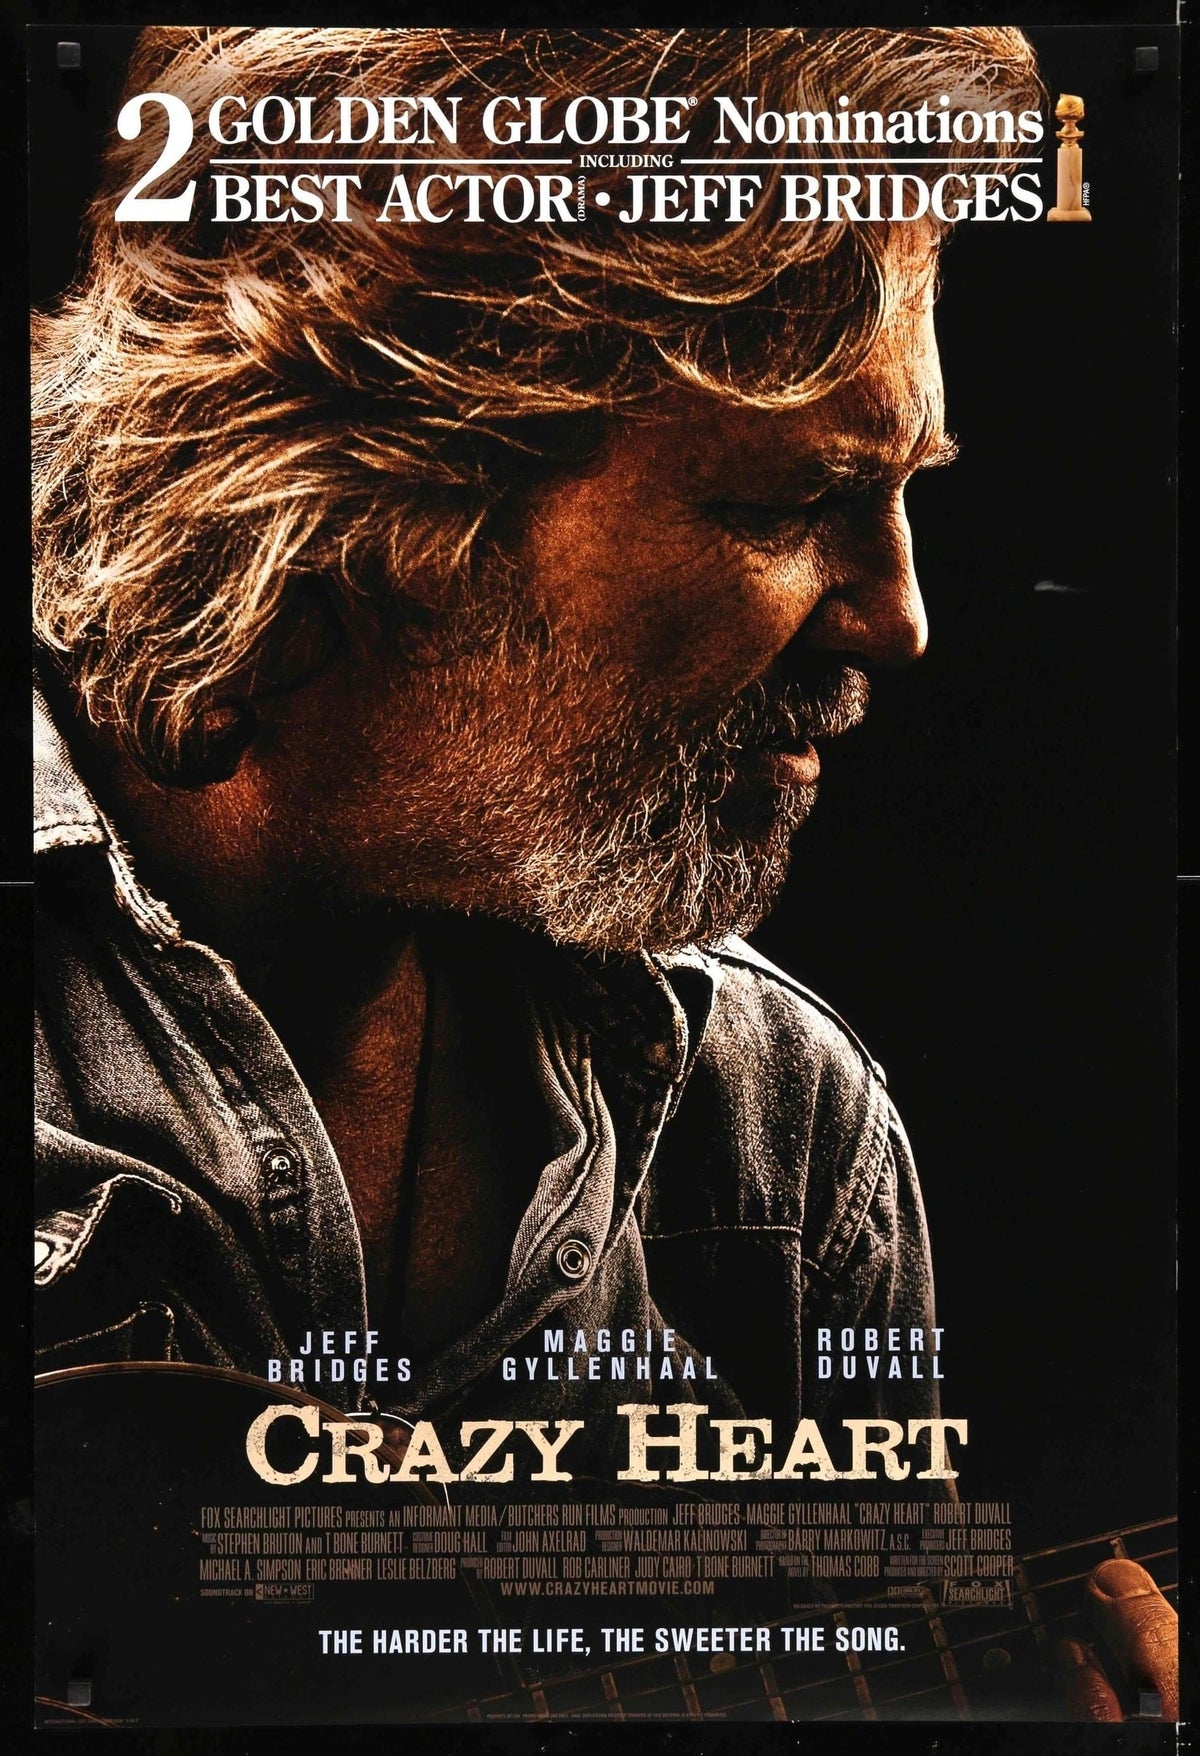 Crazy Heart (2009) original movie poster for sale at Original Film Art